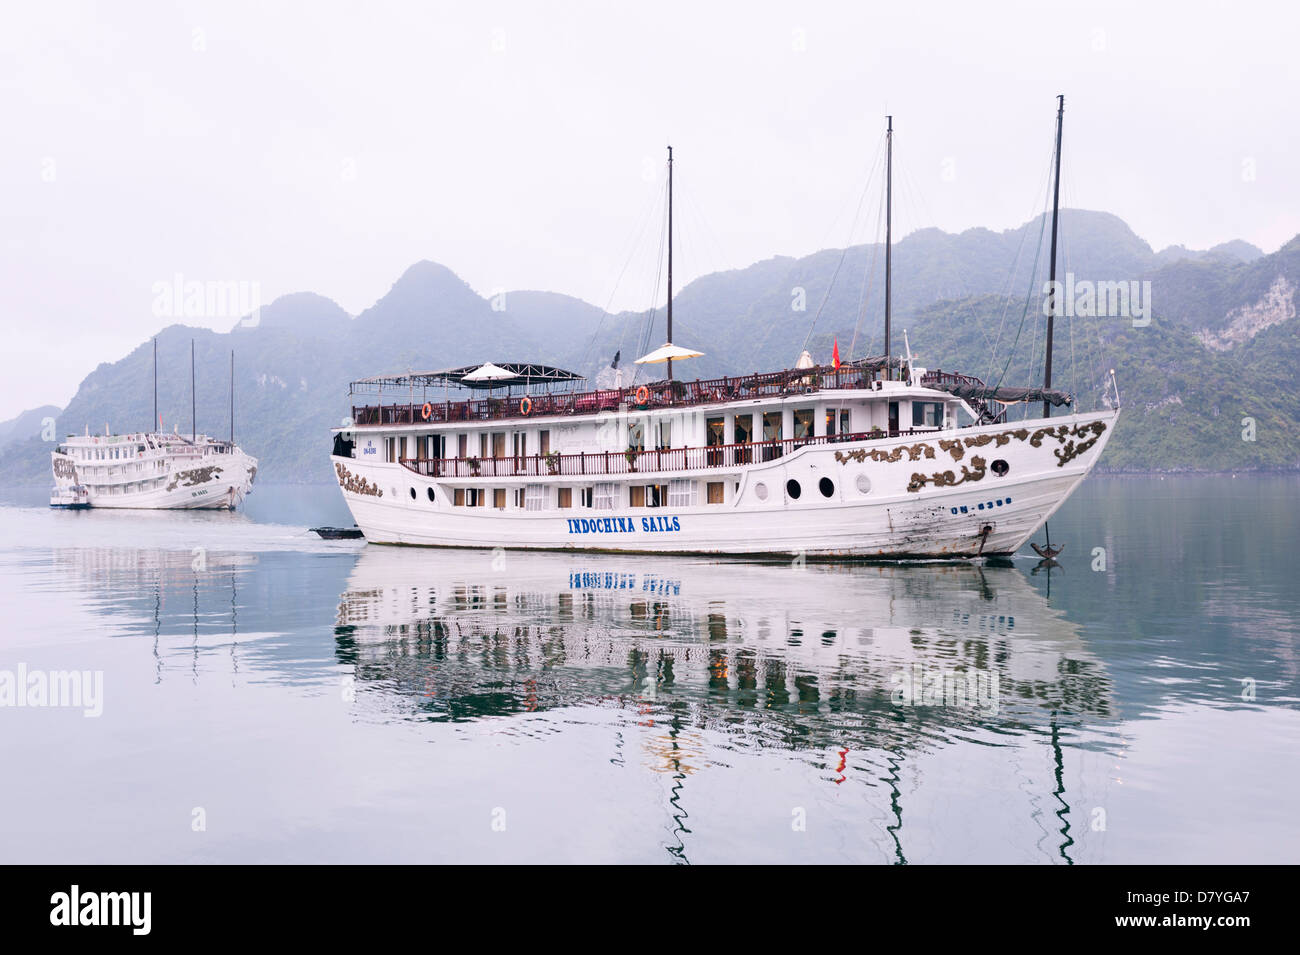 La baie d'Ha Long, Vietnam - croisière touristique bateau amarré Banque D'Images